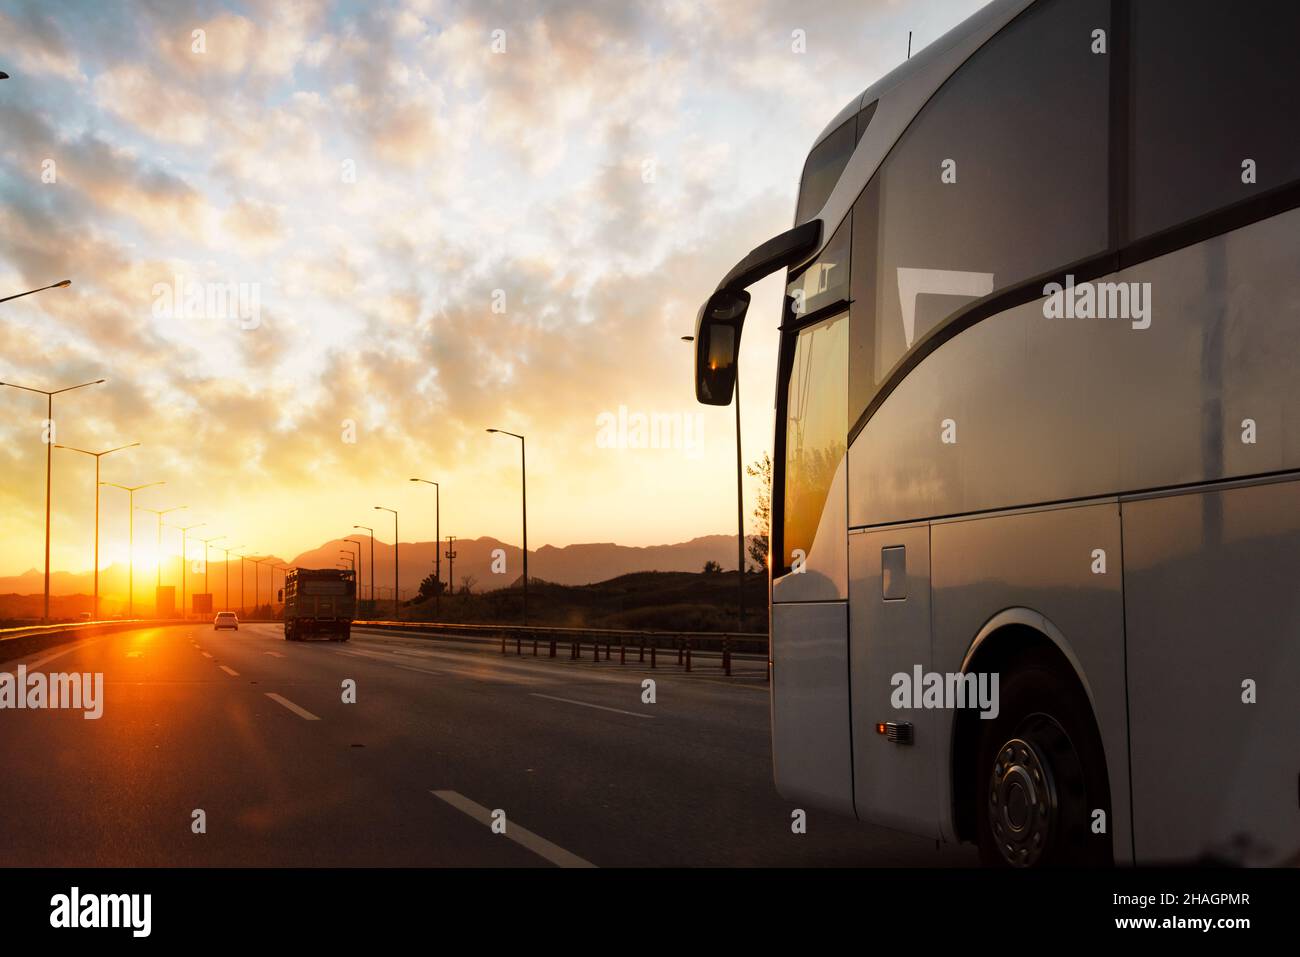 Un bus se déplace sur la route asphaltée du terrain rural contre le coucher du soleil.Concept de voyage et de transport.Photo de haute qualité Banque D'Images